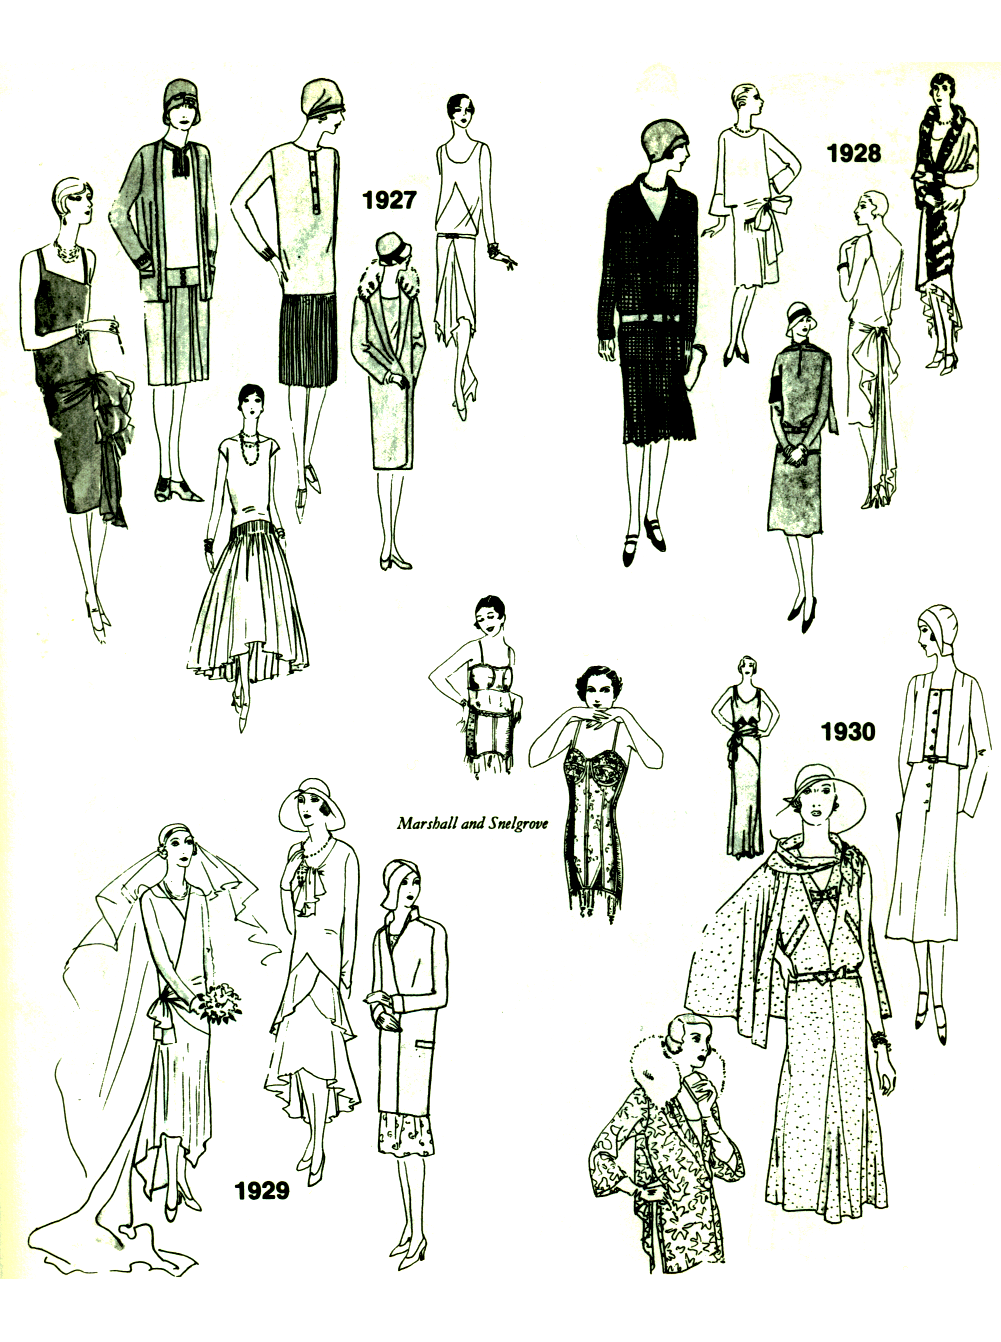 Croquis de mode montrant l'évolution de la mode à la fin des années 20